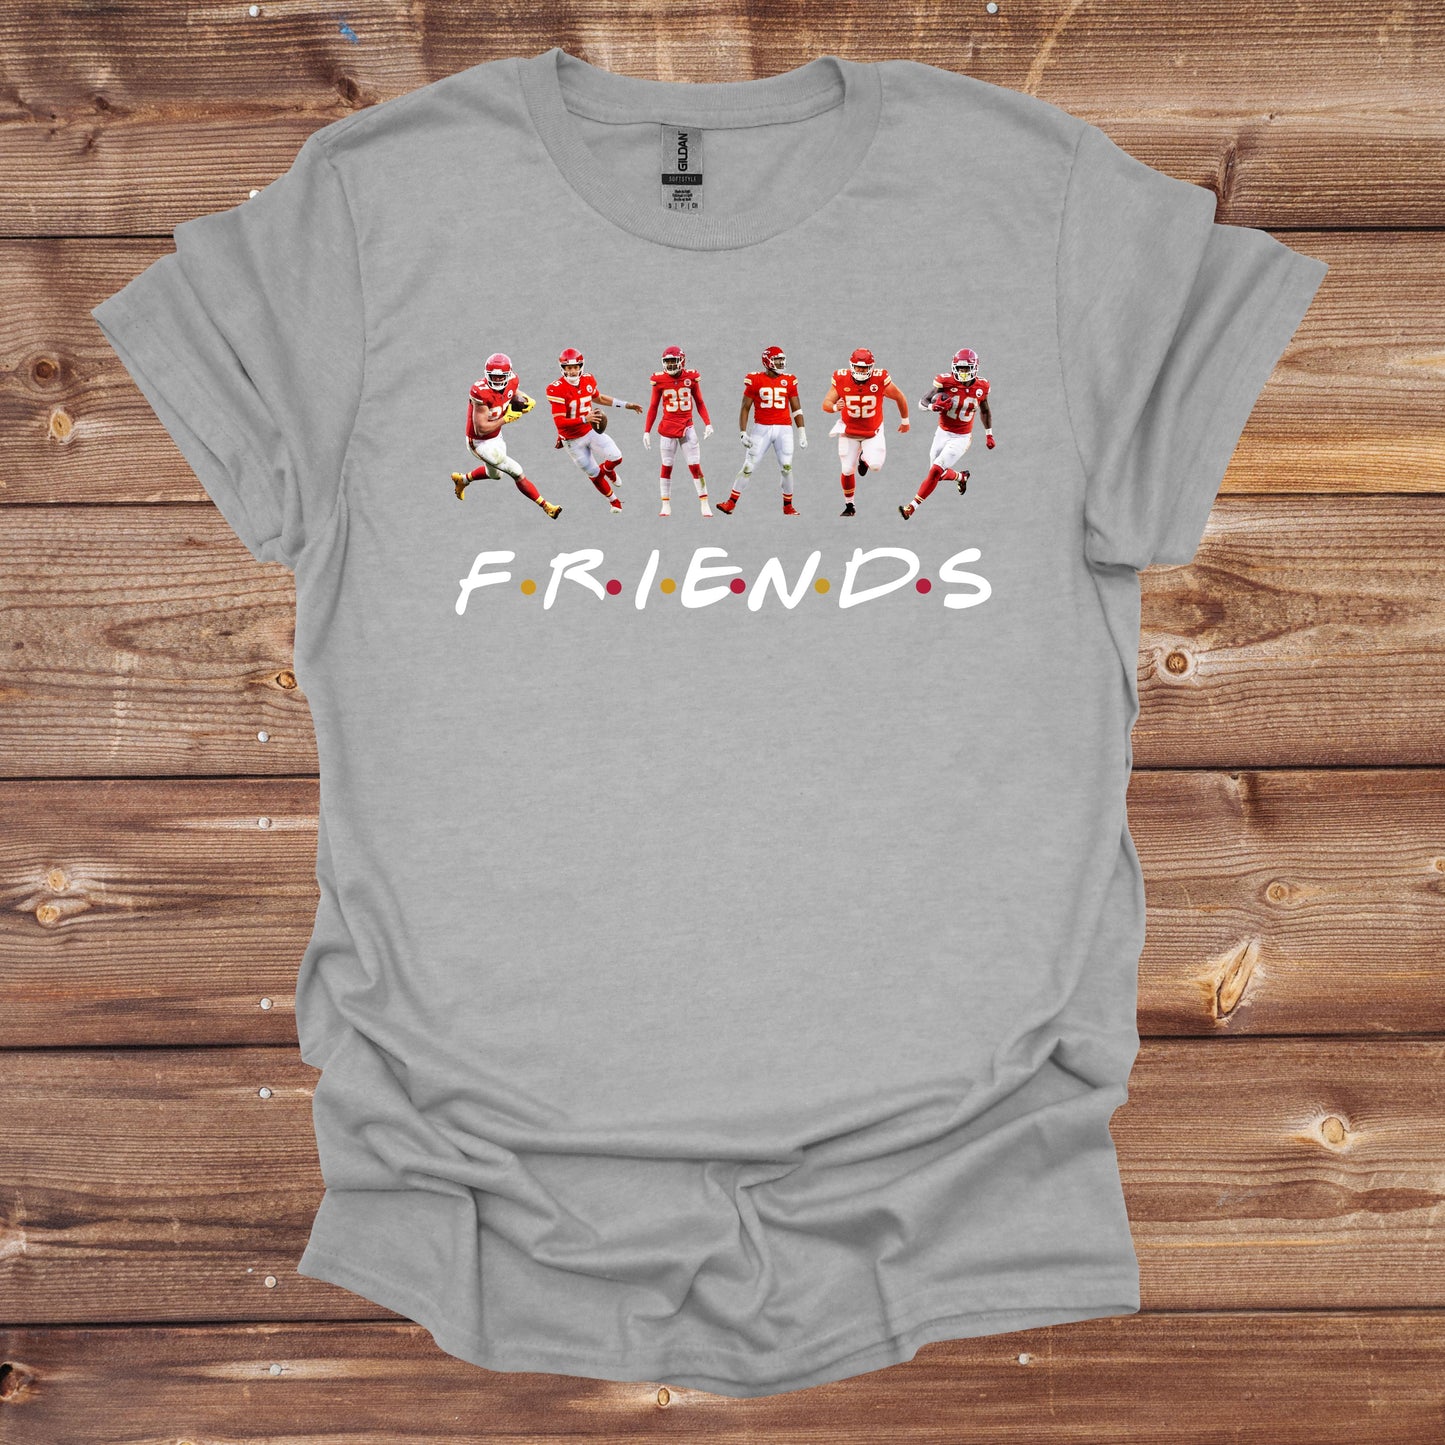 Football T-Shirt - Kansas City Chiefs - Chiefs Friends - Adult Tee Shirts - Chiefs - Sports